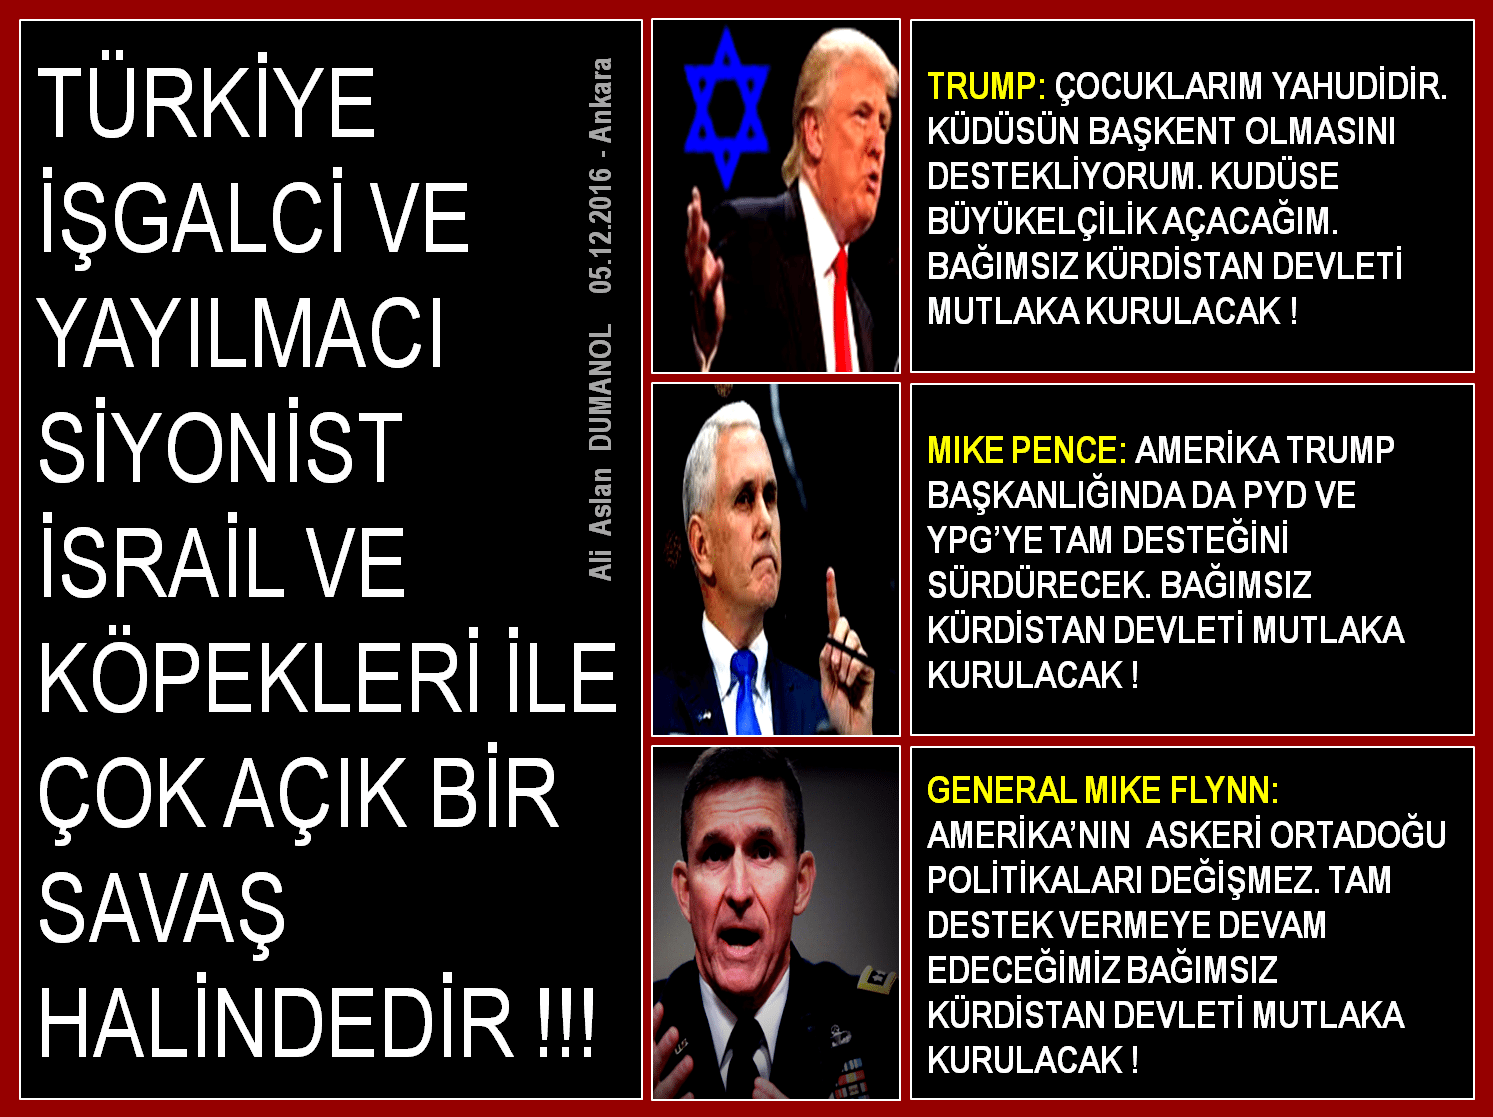 Mike Pence, Barzani’yi Arayarak Siyonizme ve Dandikistan’a (sözde kürdistan!) Olan Bağlılıklarını Bildirdi !!!